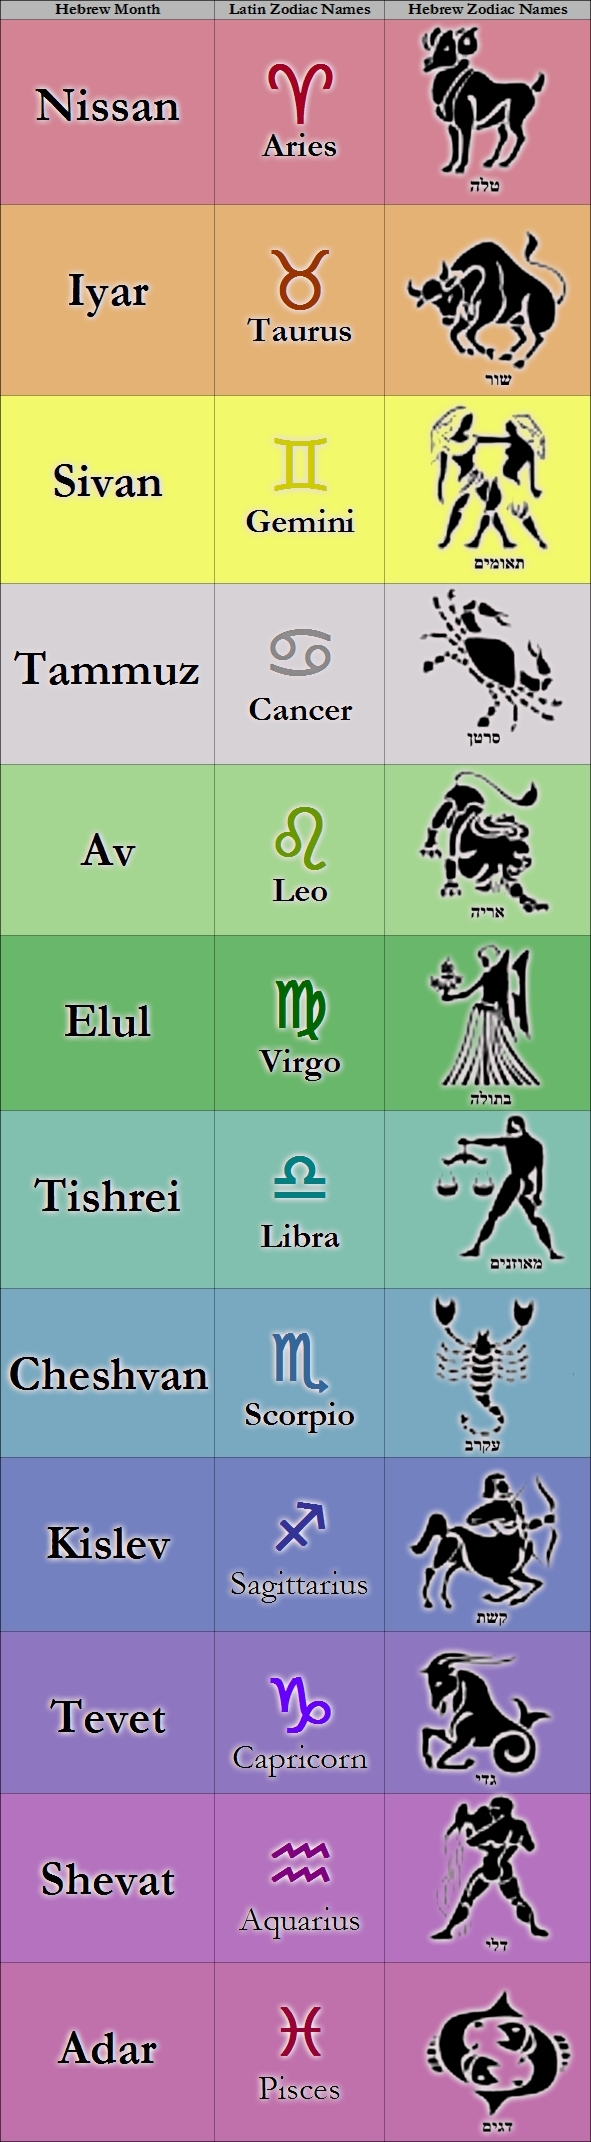 Lunar Calendar Zodiac Signs | Ten Free Printable Calendar